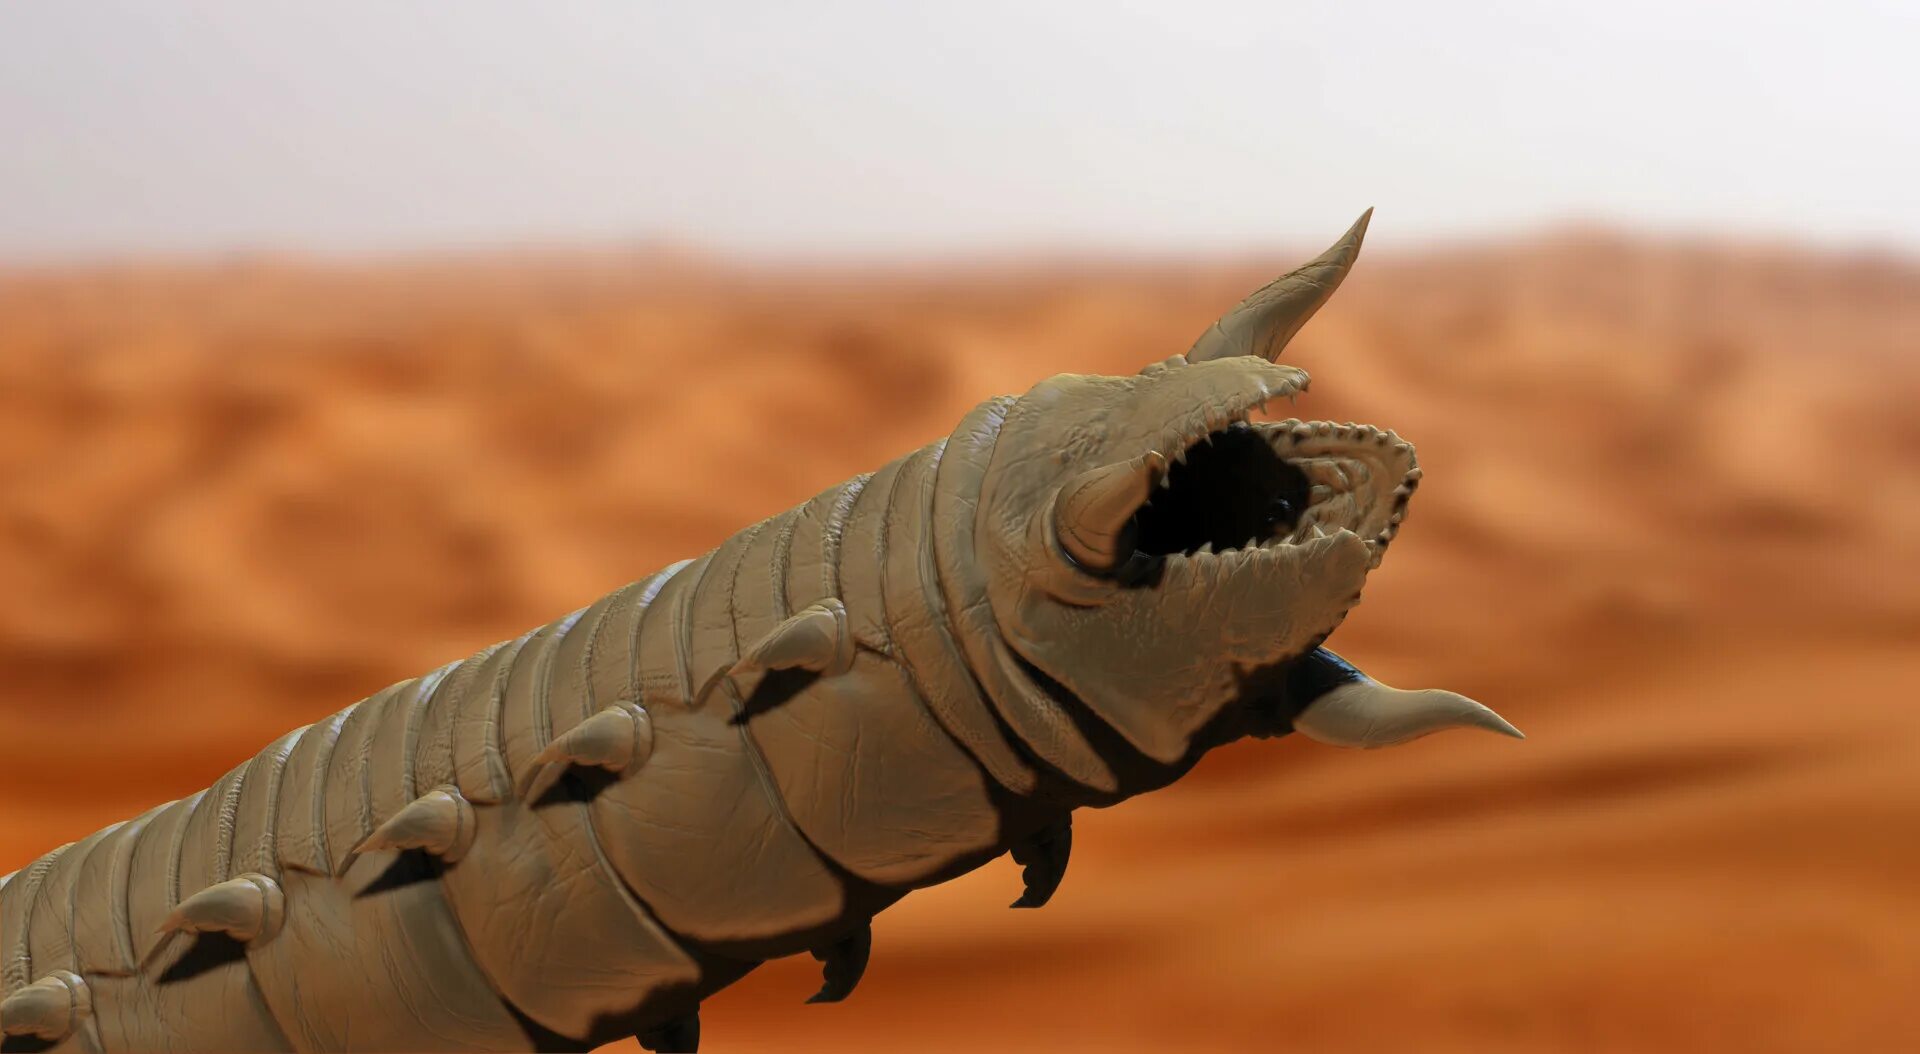 Дюна червяк. Пустынный червь Дюна. Песчаный червь Дюна. Dune 2021 Sandworm. Песчаного червя Шаи́-Хулуда Дюна.